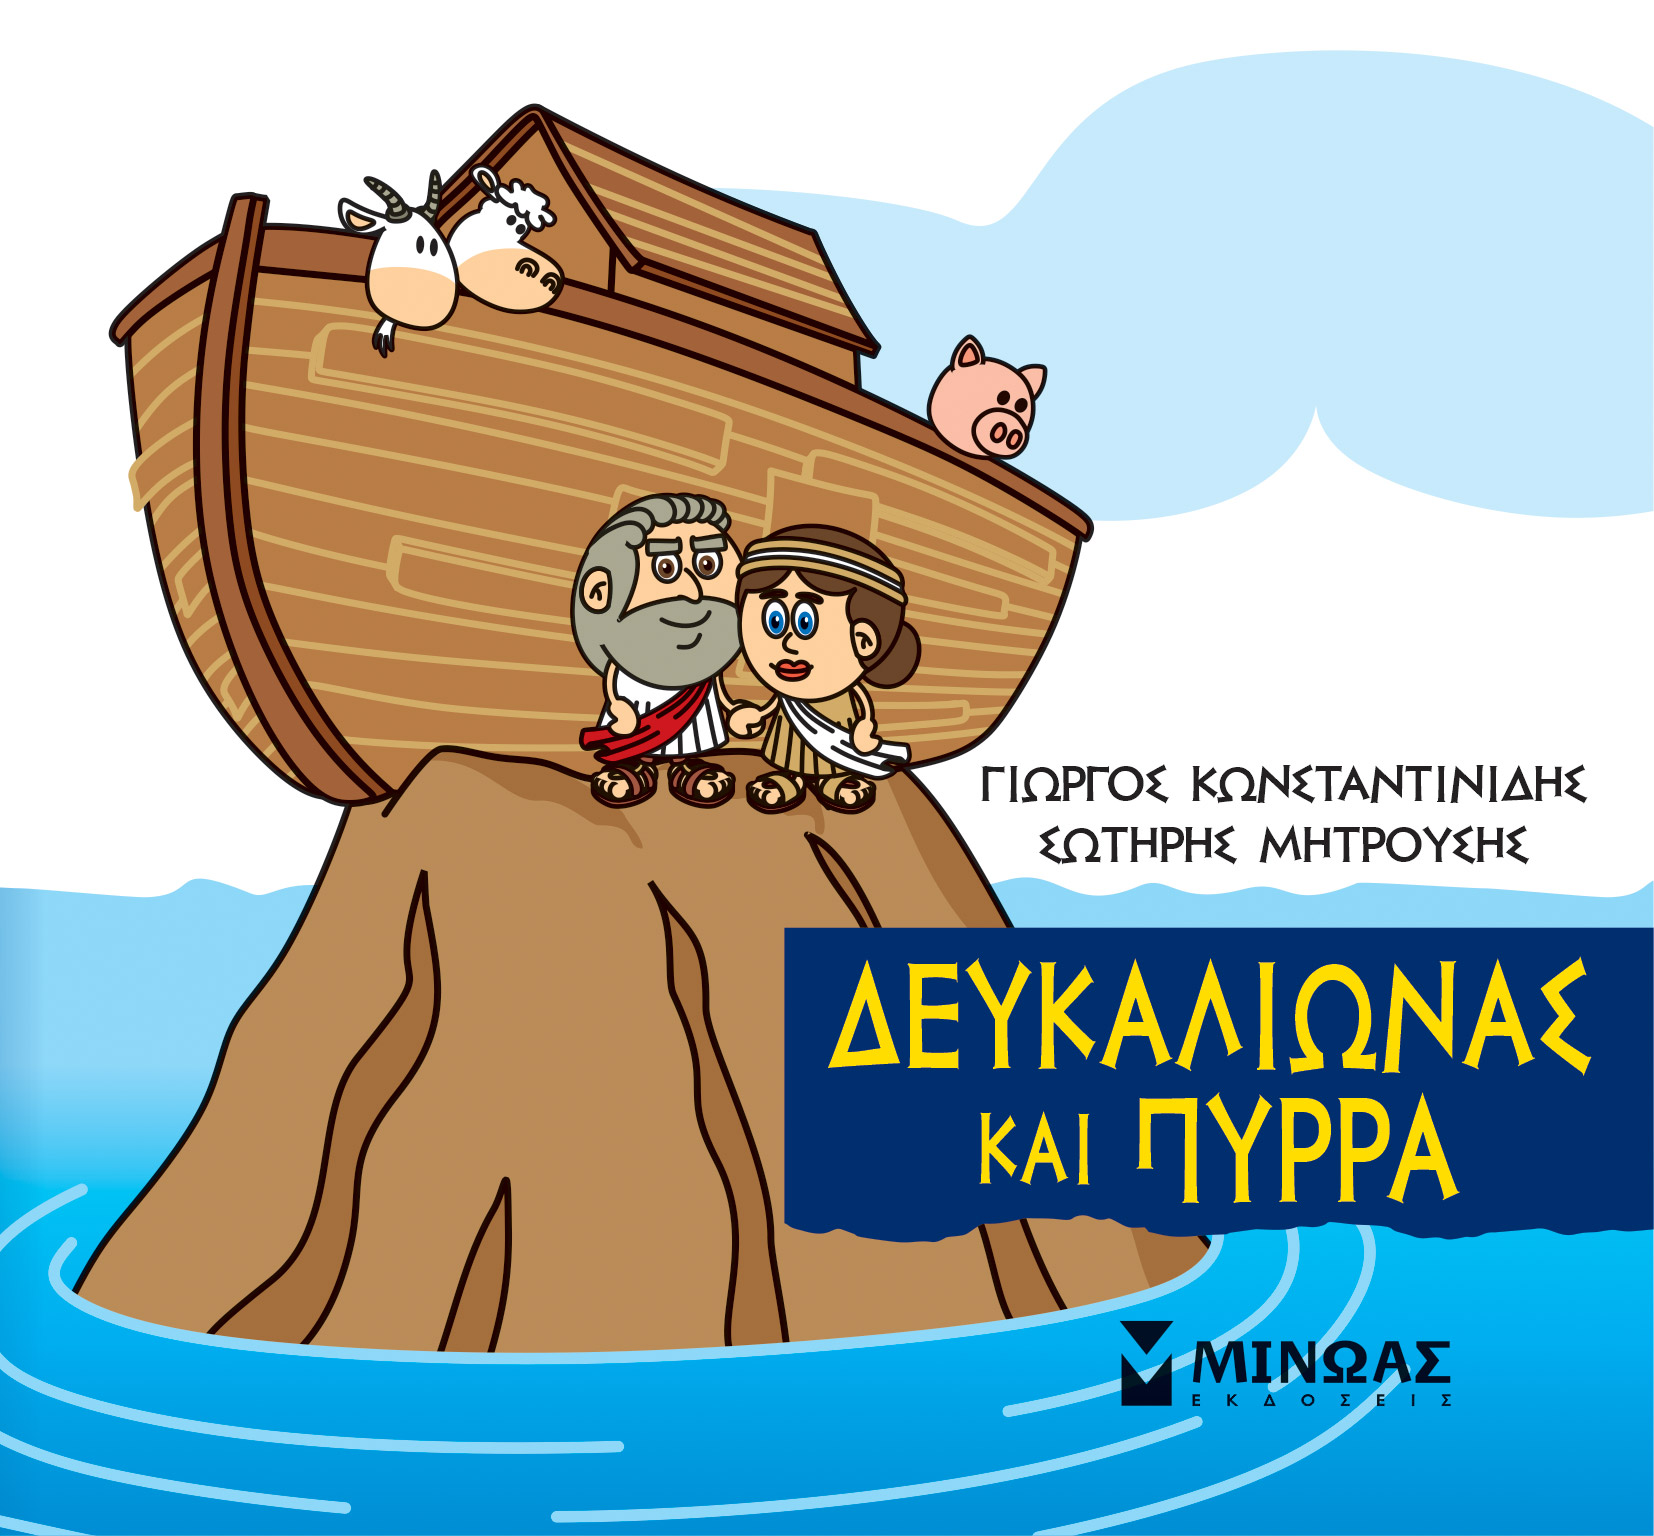 Μικρή μυθολογία: Δευκαλίωνας και Πύρρα, , Κωνσταντινίδης, Γιώργος, Μίνωας, 2021